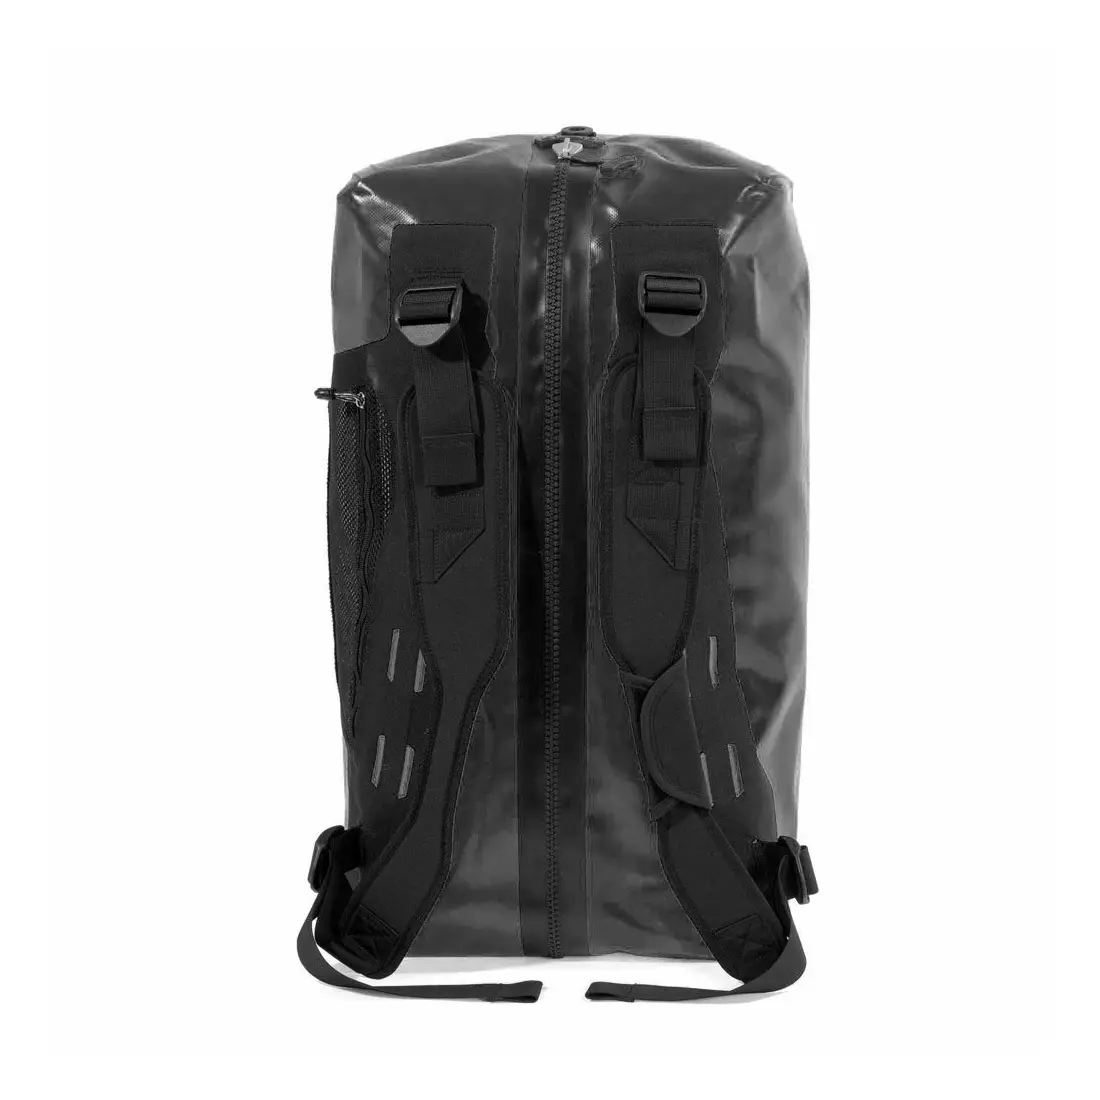 ORTLIEB  torba transportowa / plecak  DUFFLE BLACK 40L O-K1471